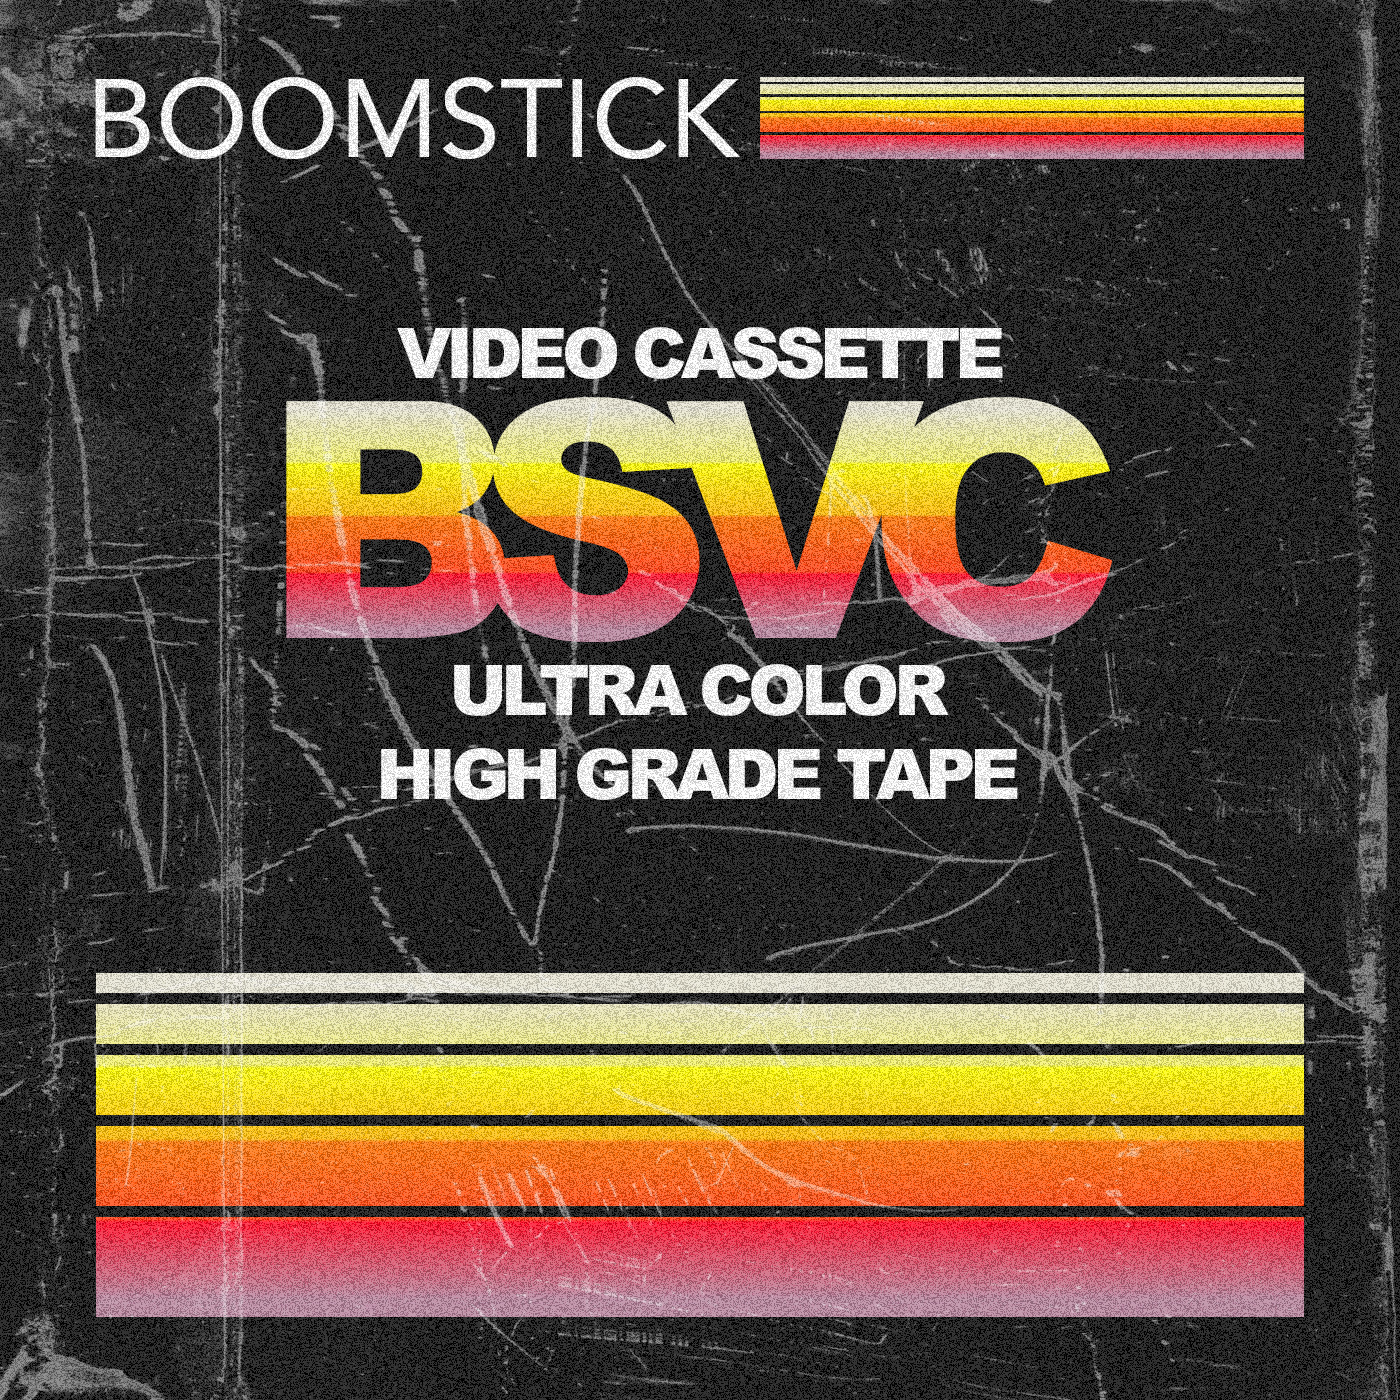 The Boomstick Video Club